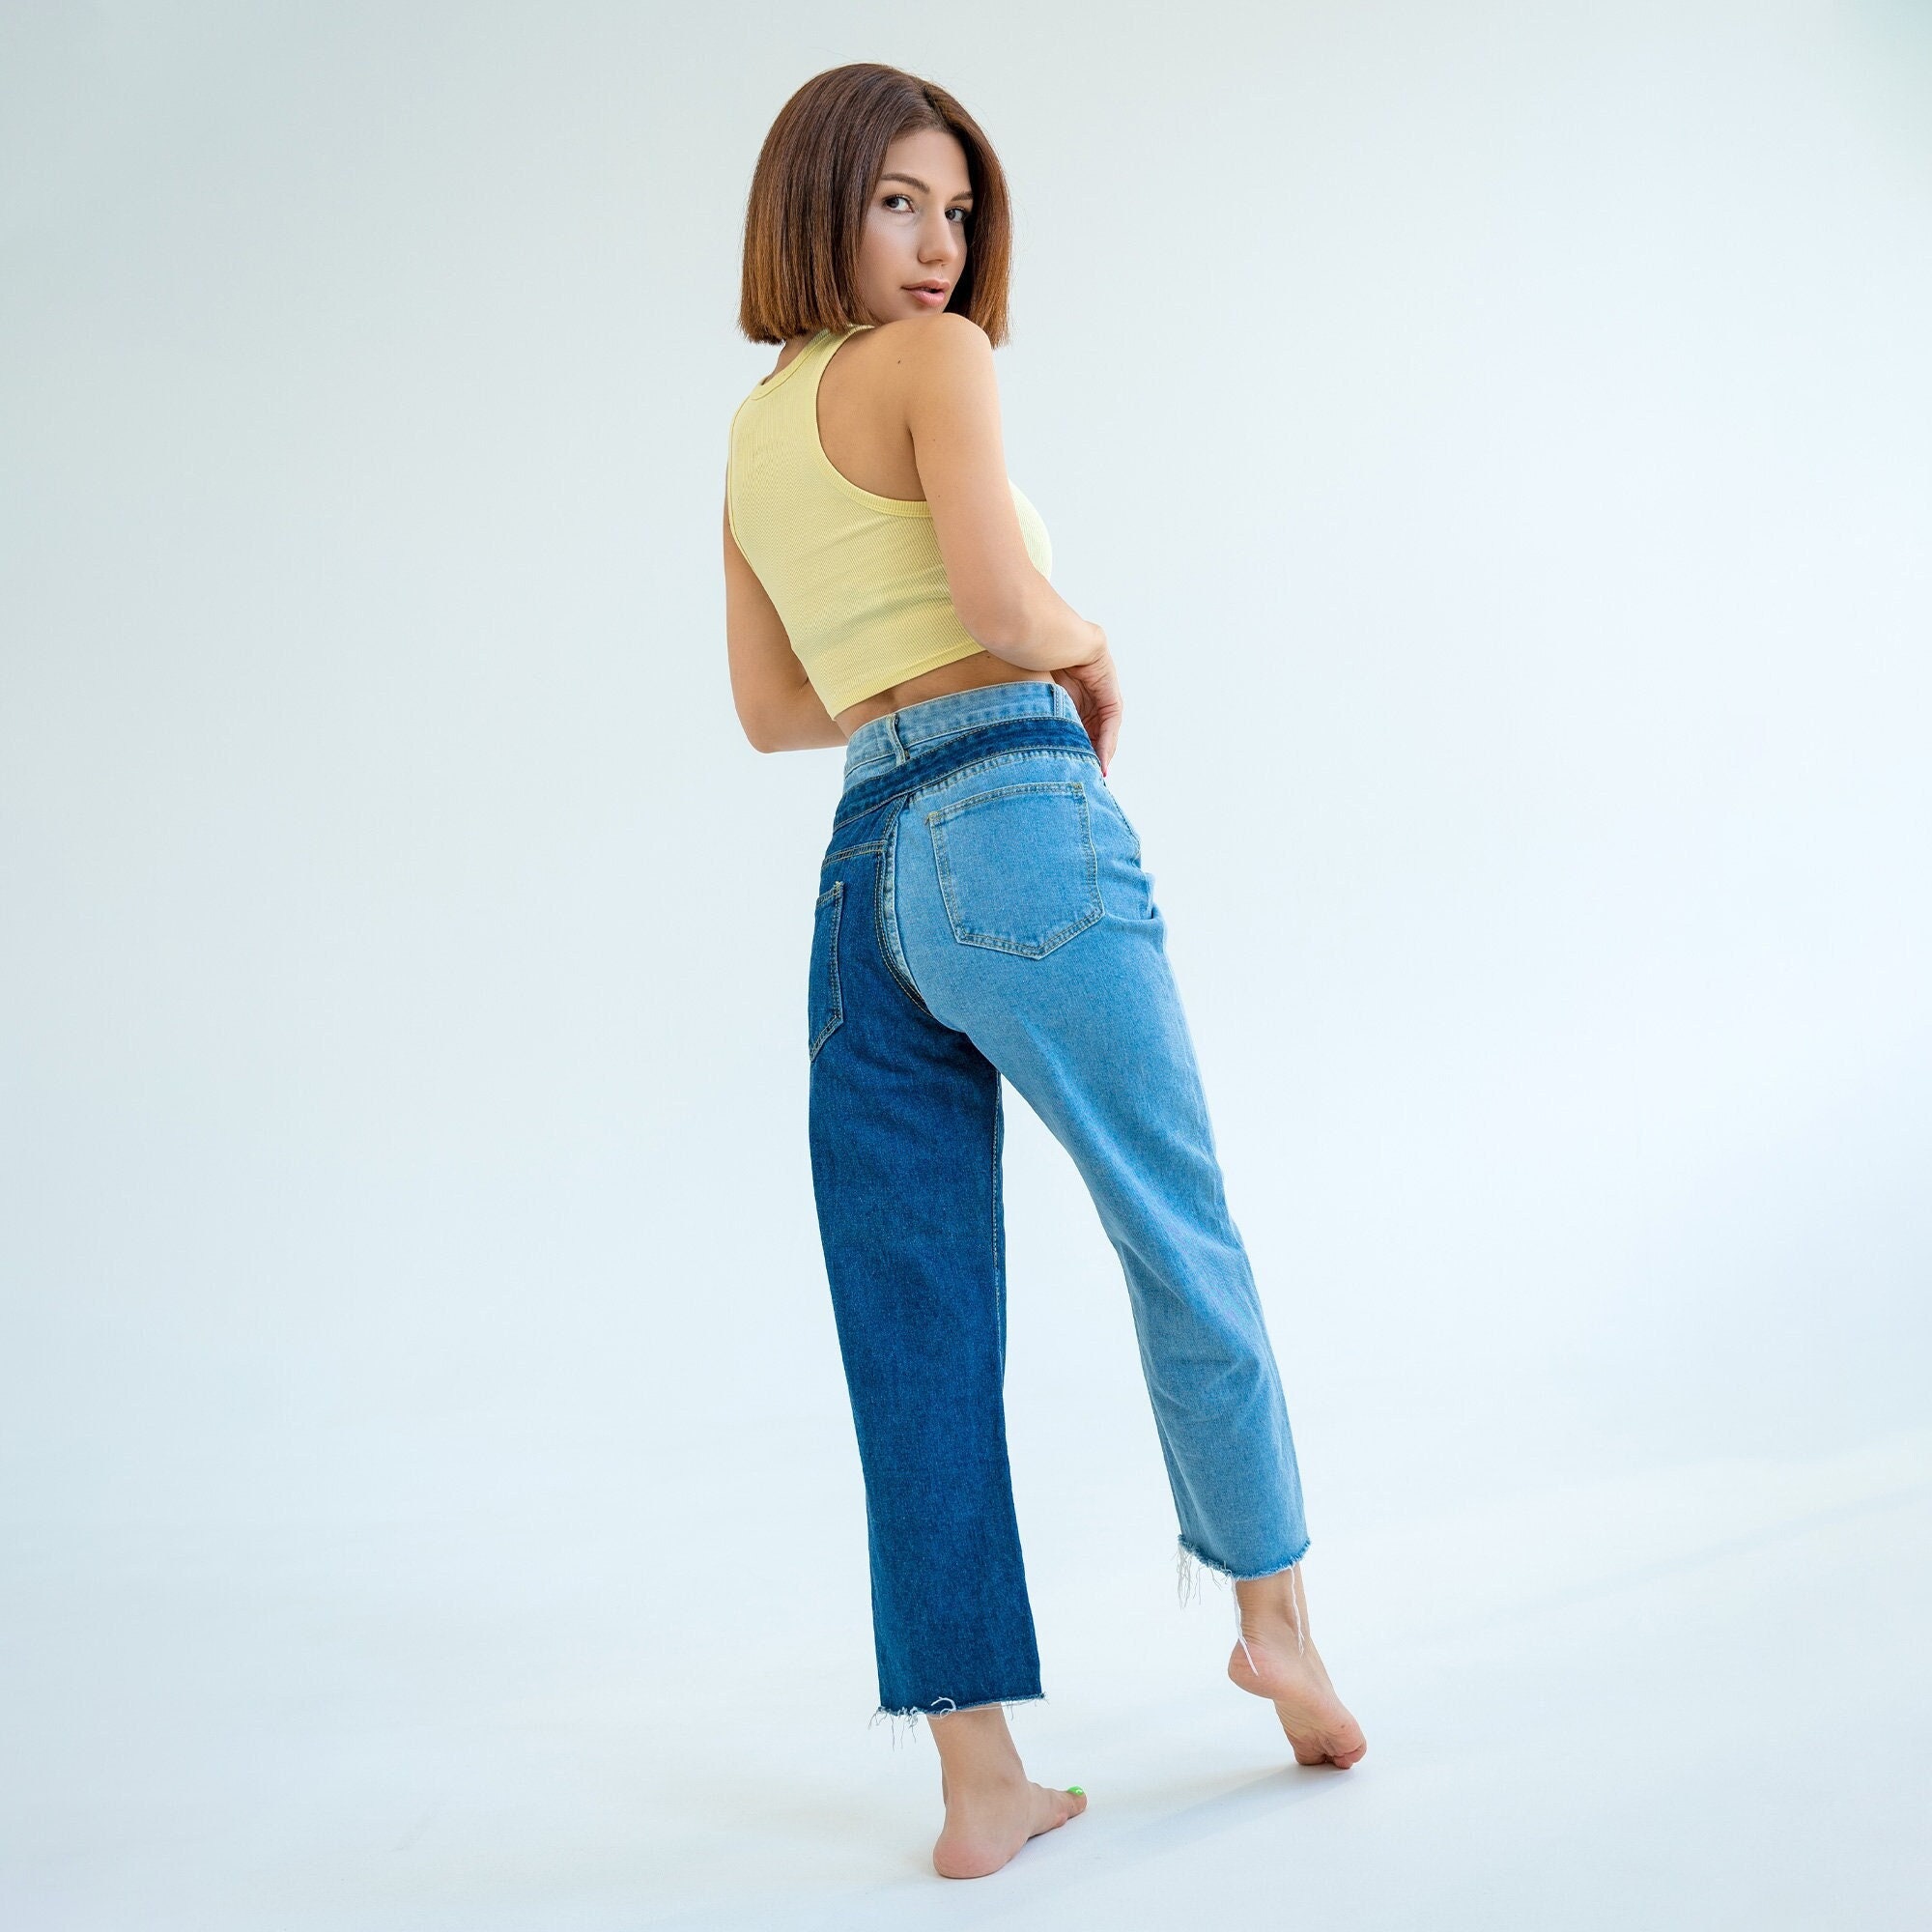 Two Tone Teal and Dark Blue Slim Fit Tall Pants – Dellez Tall Fashion LLC